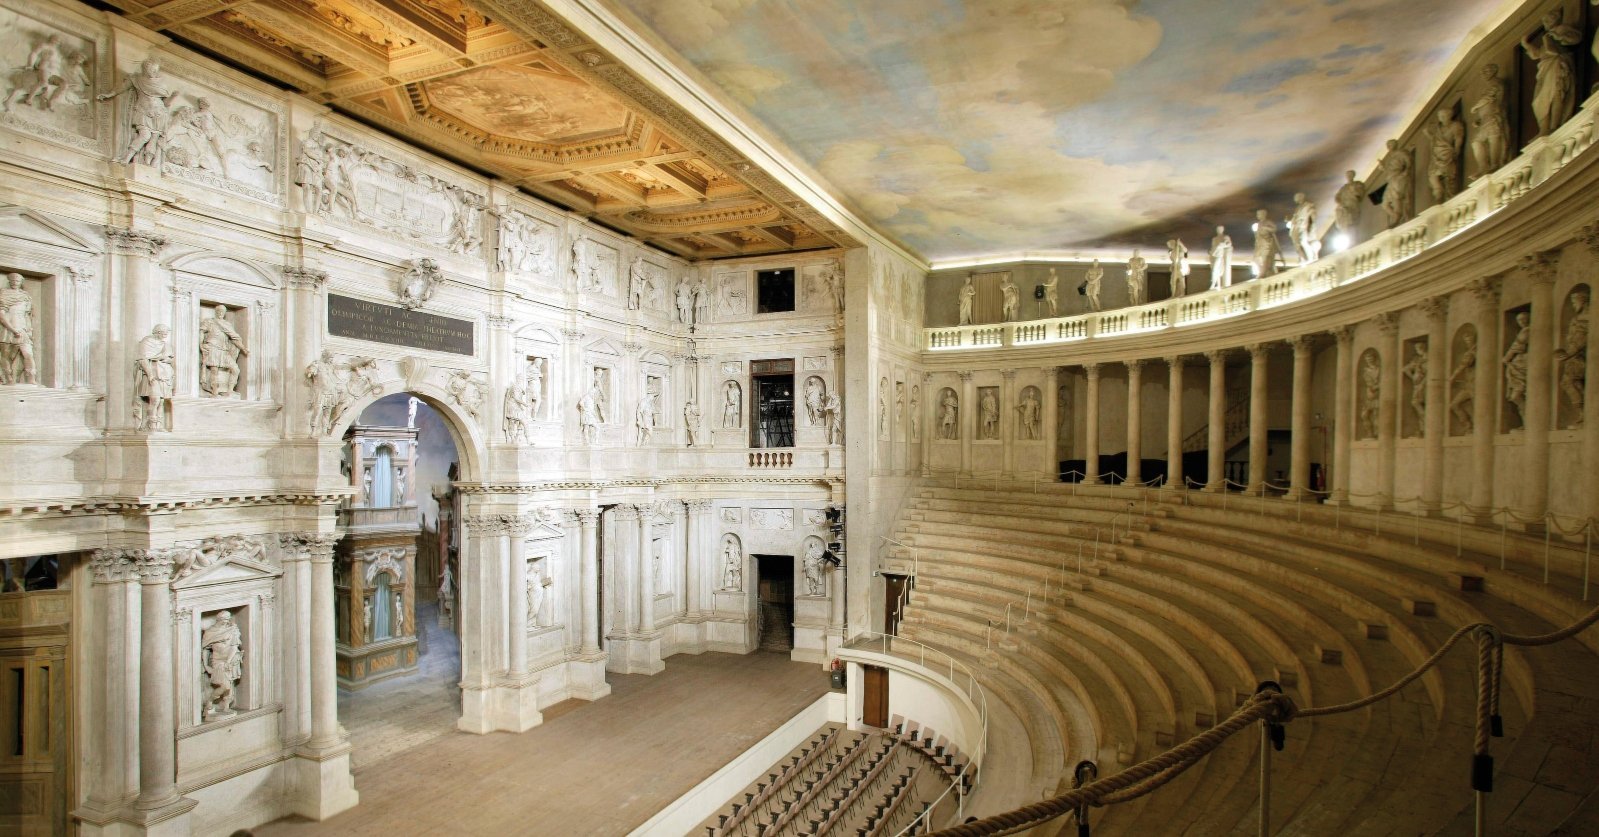 Come fare per visitare il Teatro Olimpico di Vicenza? Orari, costi e come prenotare